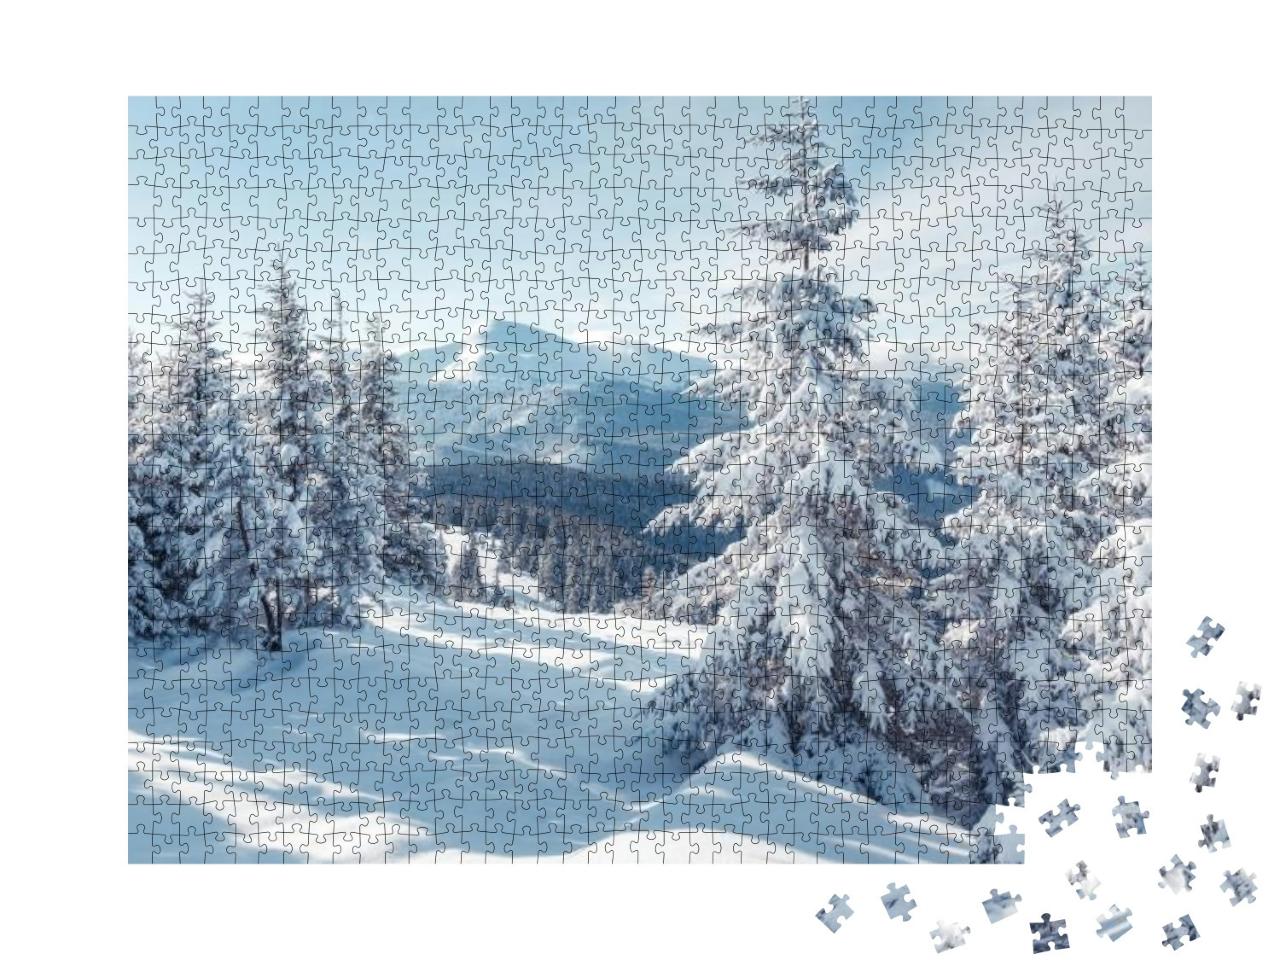 Puzzle 1000 Teile „Prächtige Alpenlandschaft im Winter“